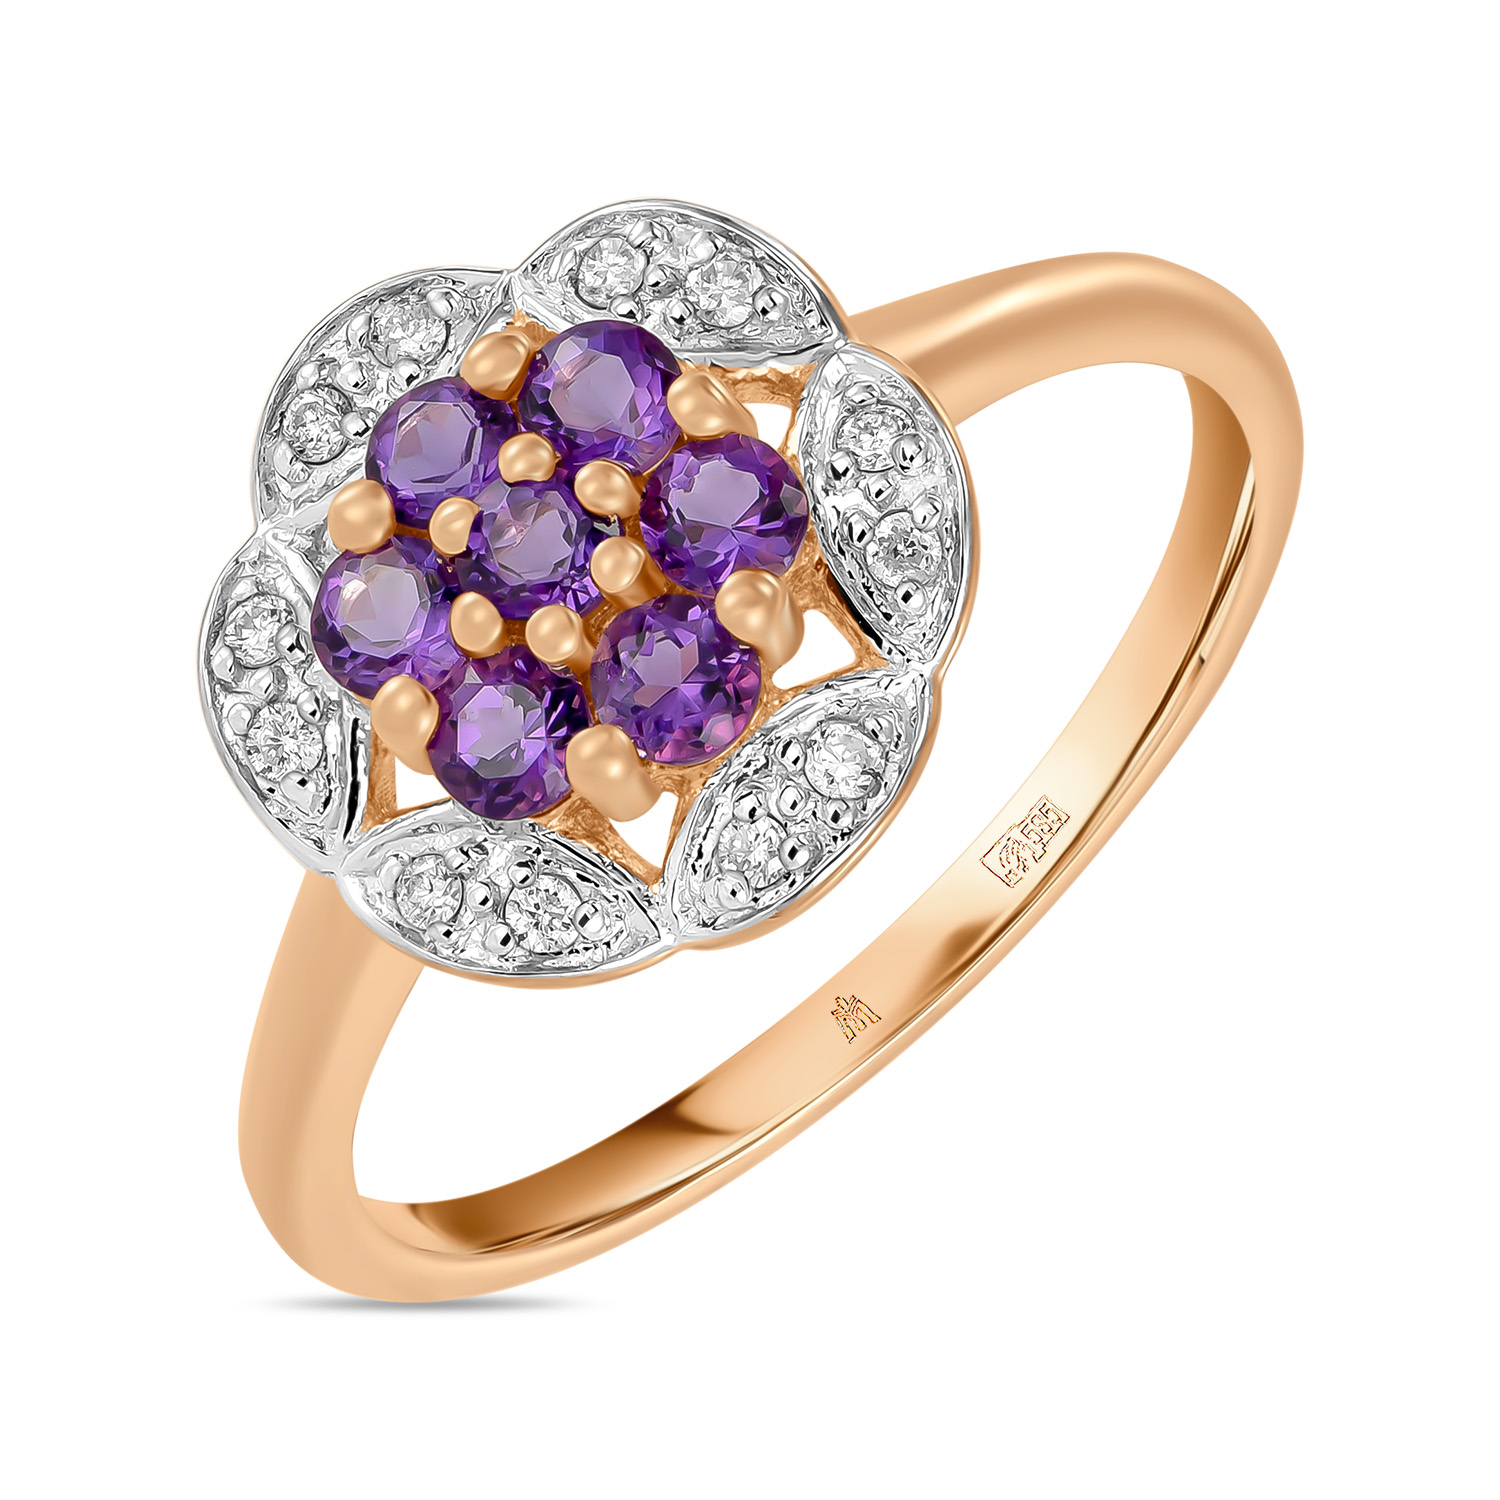 Кольца МЮЗ Золотое кольцо с аметистами и бриллиантами